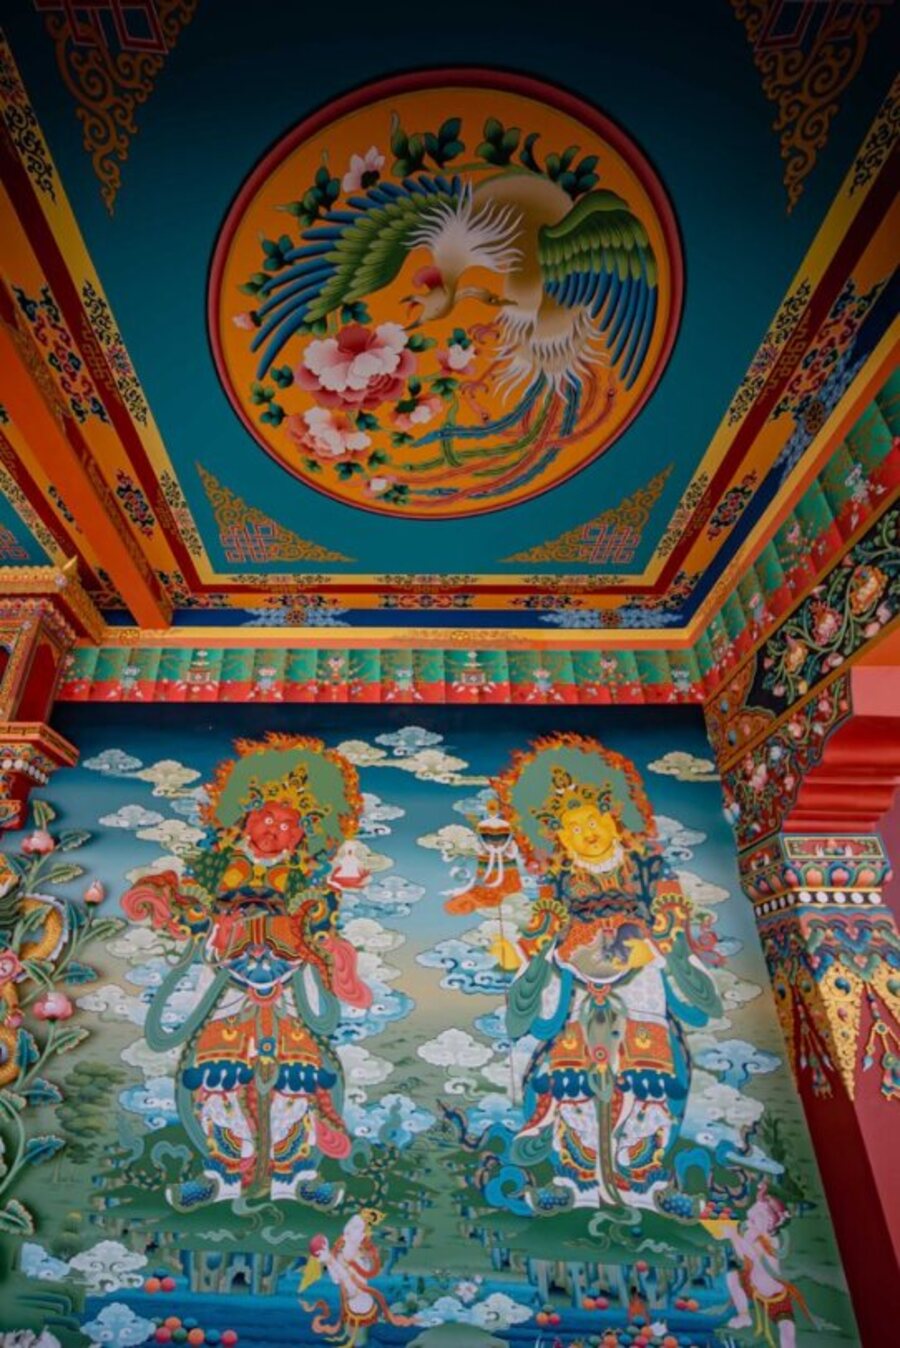 Bức họa thực hiện thủ công bởi các họa sư tới từ quê hương Đức Phật